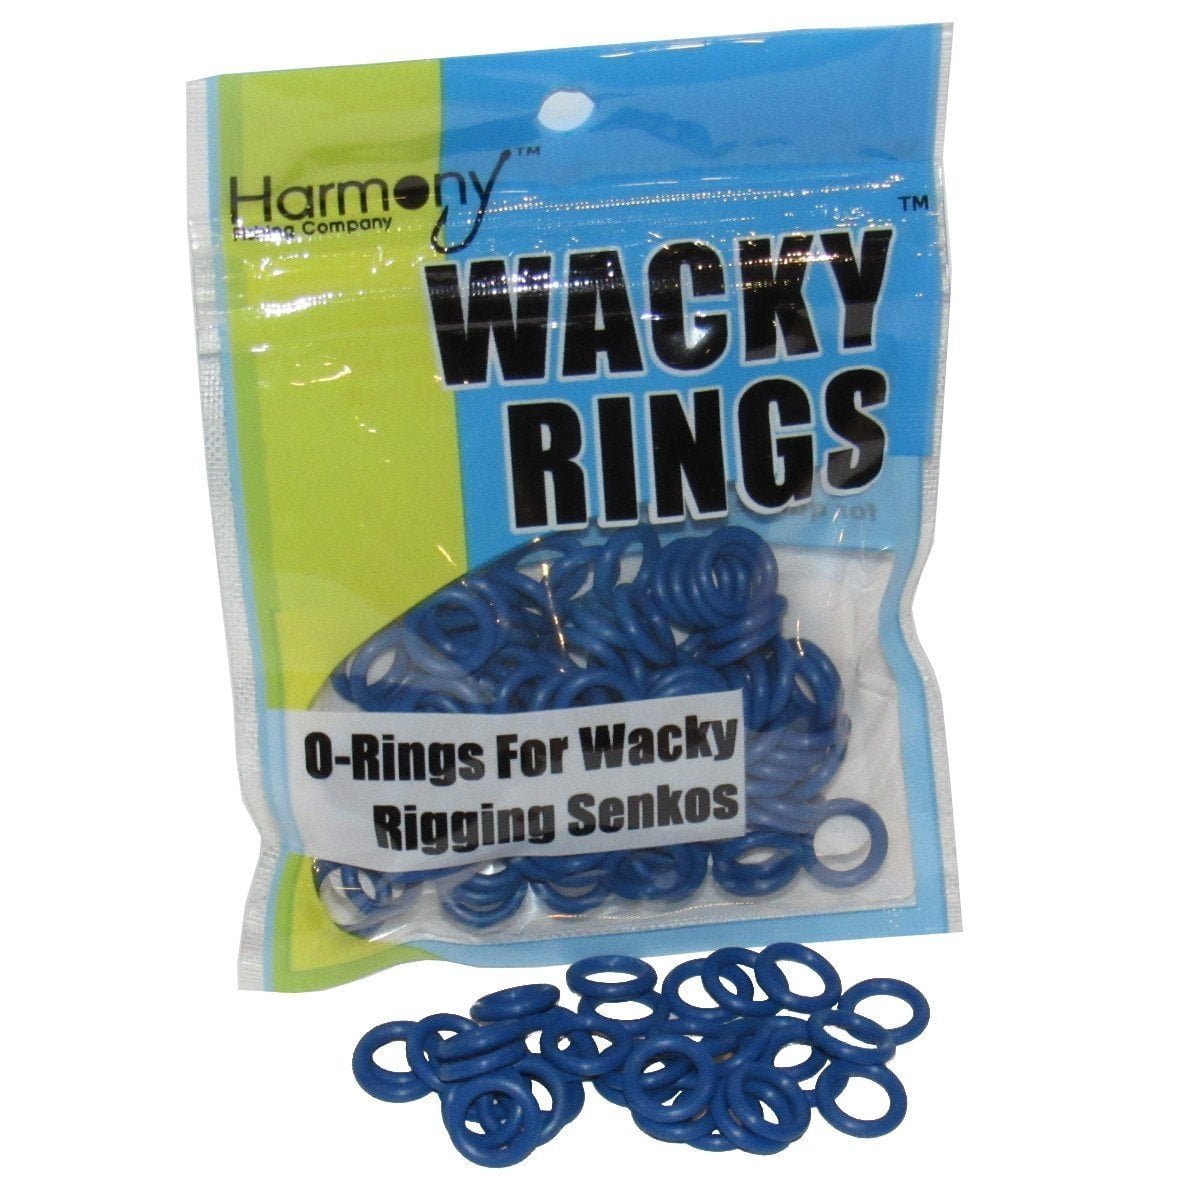 Wacky Rings O-Rings for Wacky Rigging Senko Worms 100 orings for 4&5 Senkos